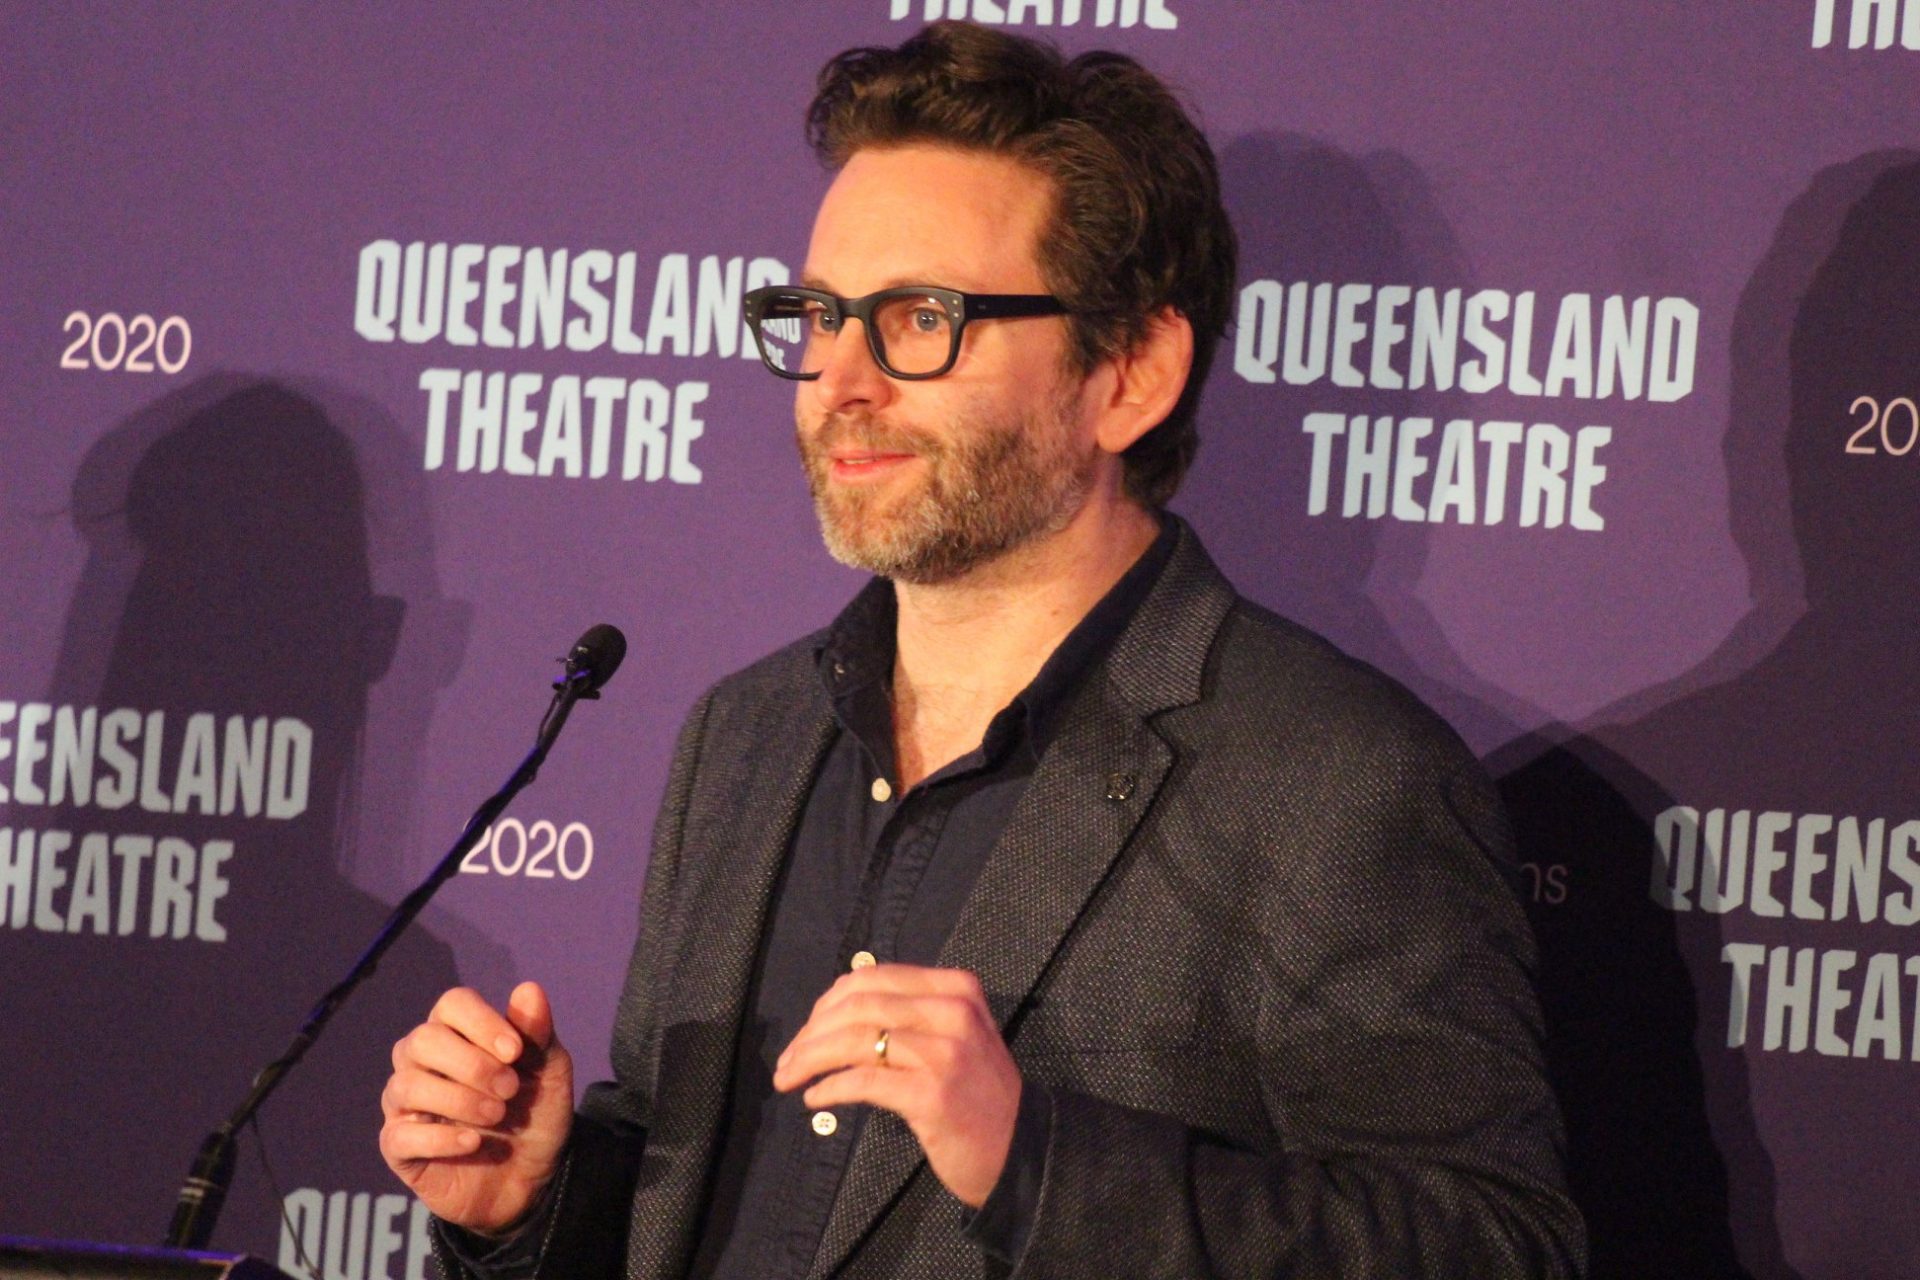 Queensland Theatre 2020 Launch